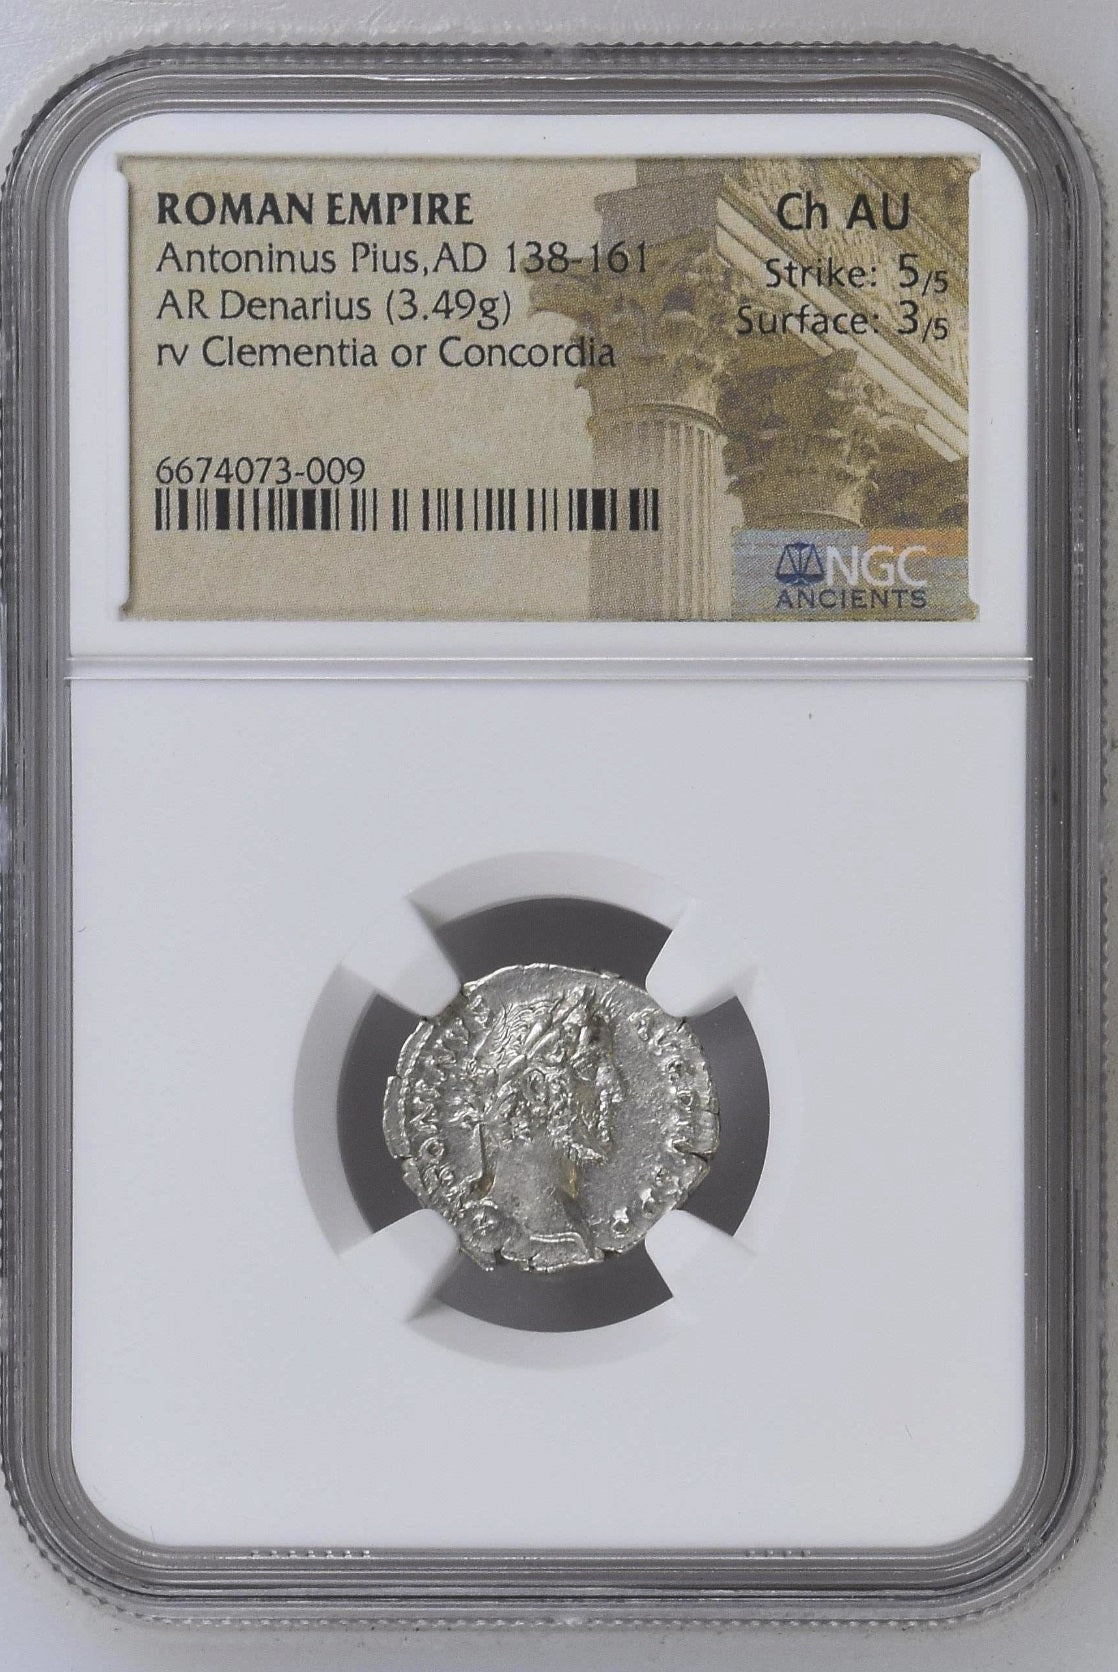 Roman Empire - Antoninus Pius - Silver Denarius - NGC Ch AU - RIC:84